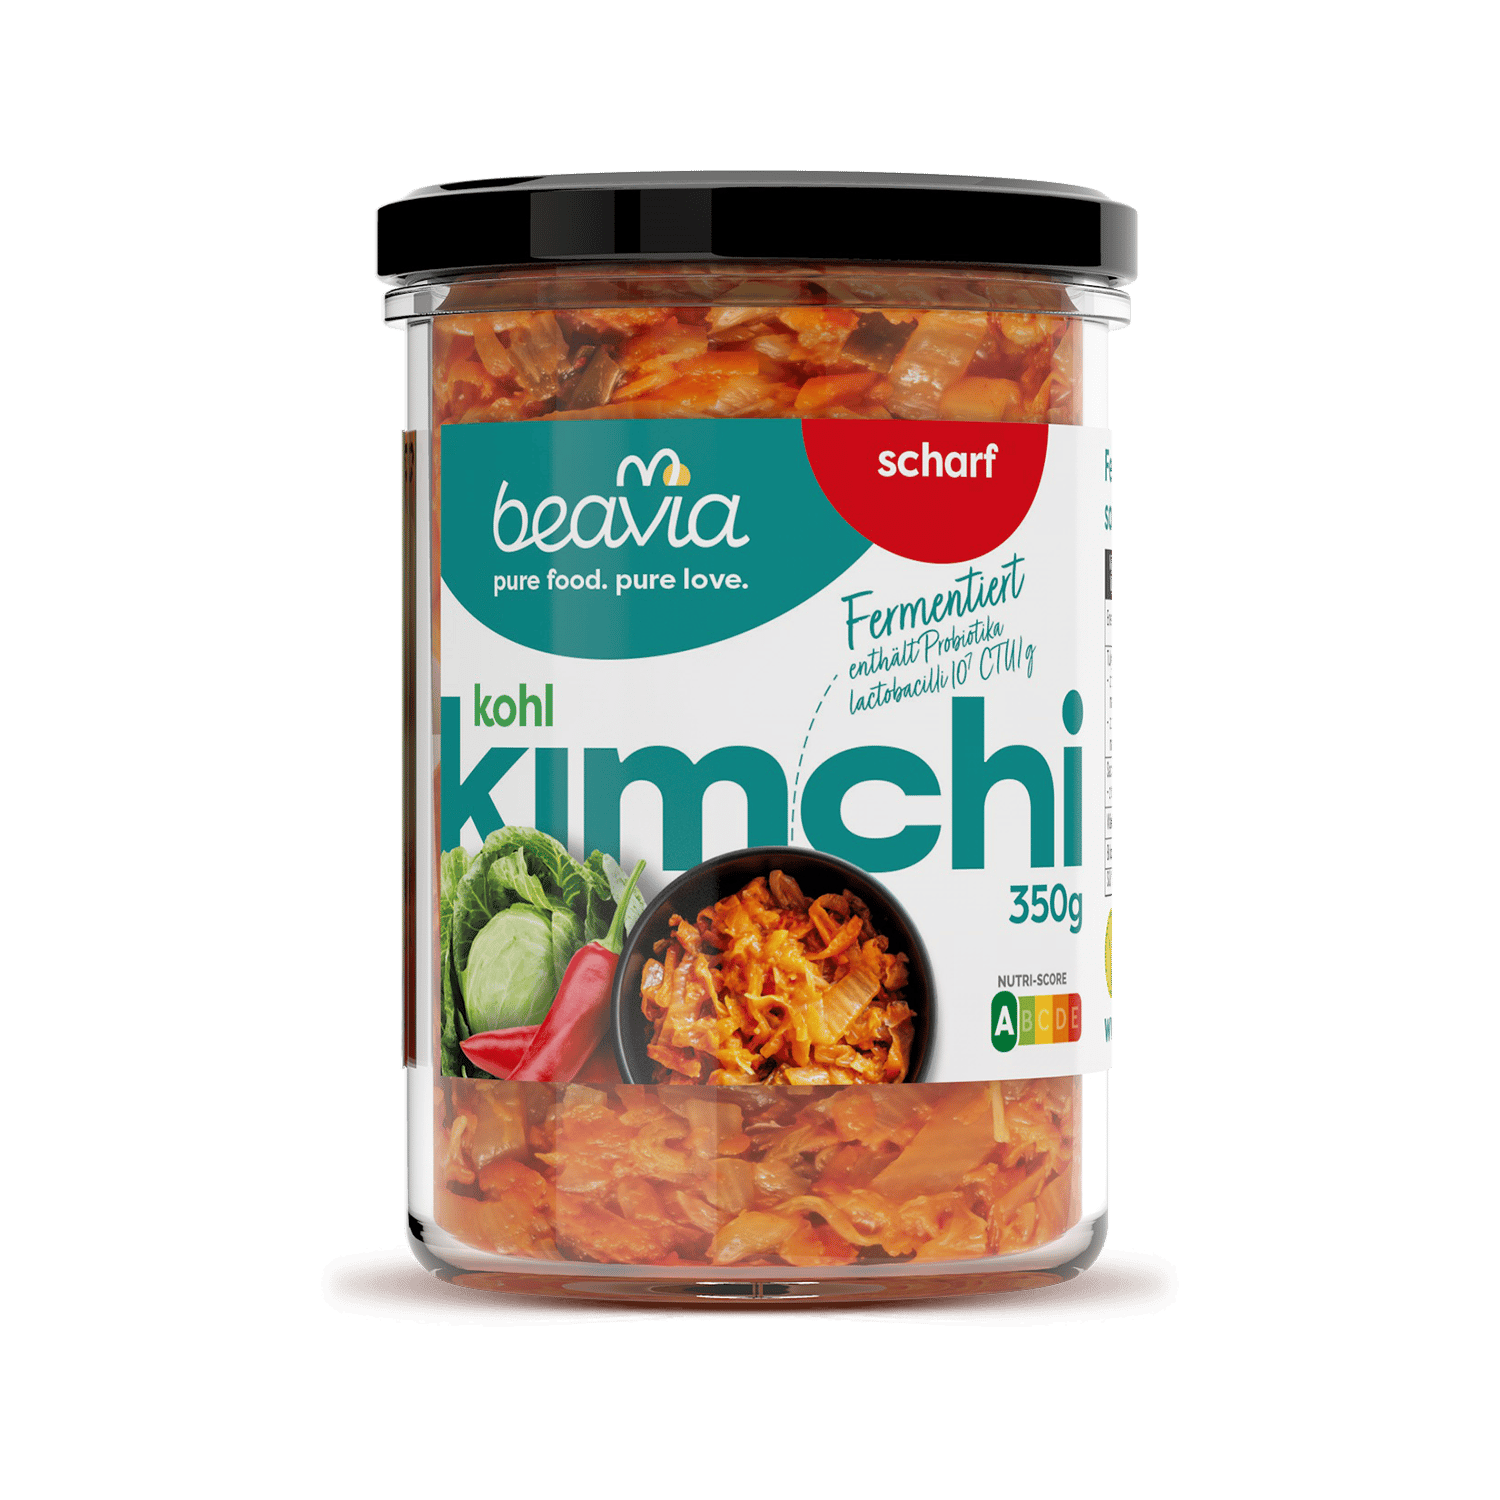 Kohl Kimchi Scharf, 350g